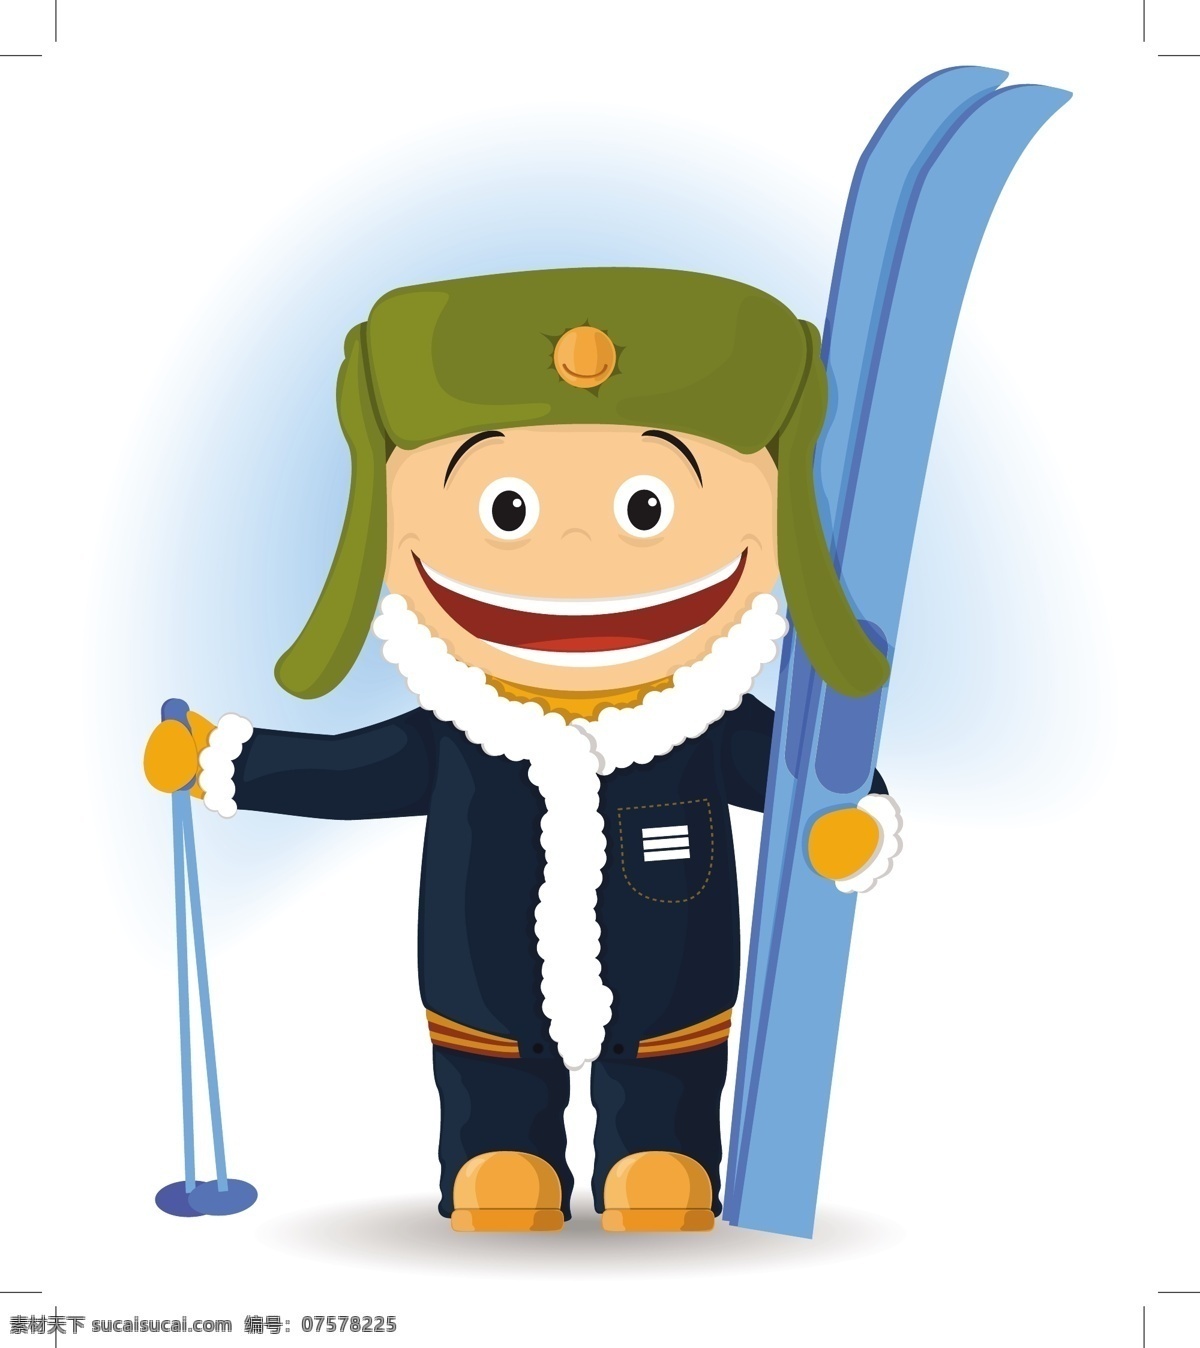 快乐 滑雪者 插图 手 儿童 运动 雪 冬天 手画 微笑 孩子 衣服 帽子 工具 滑雪 元素 有趣 冷 手套 白色